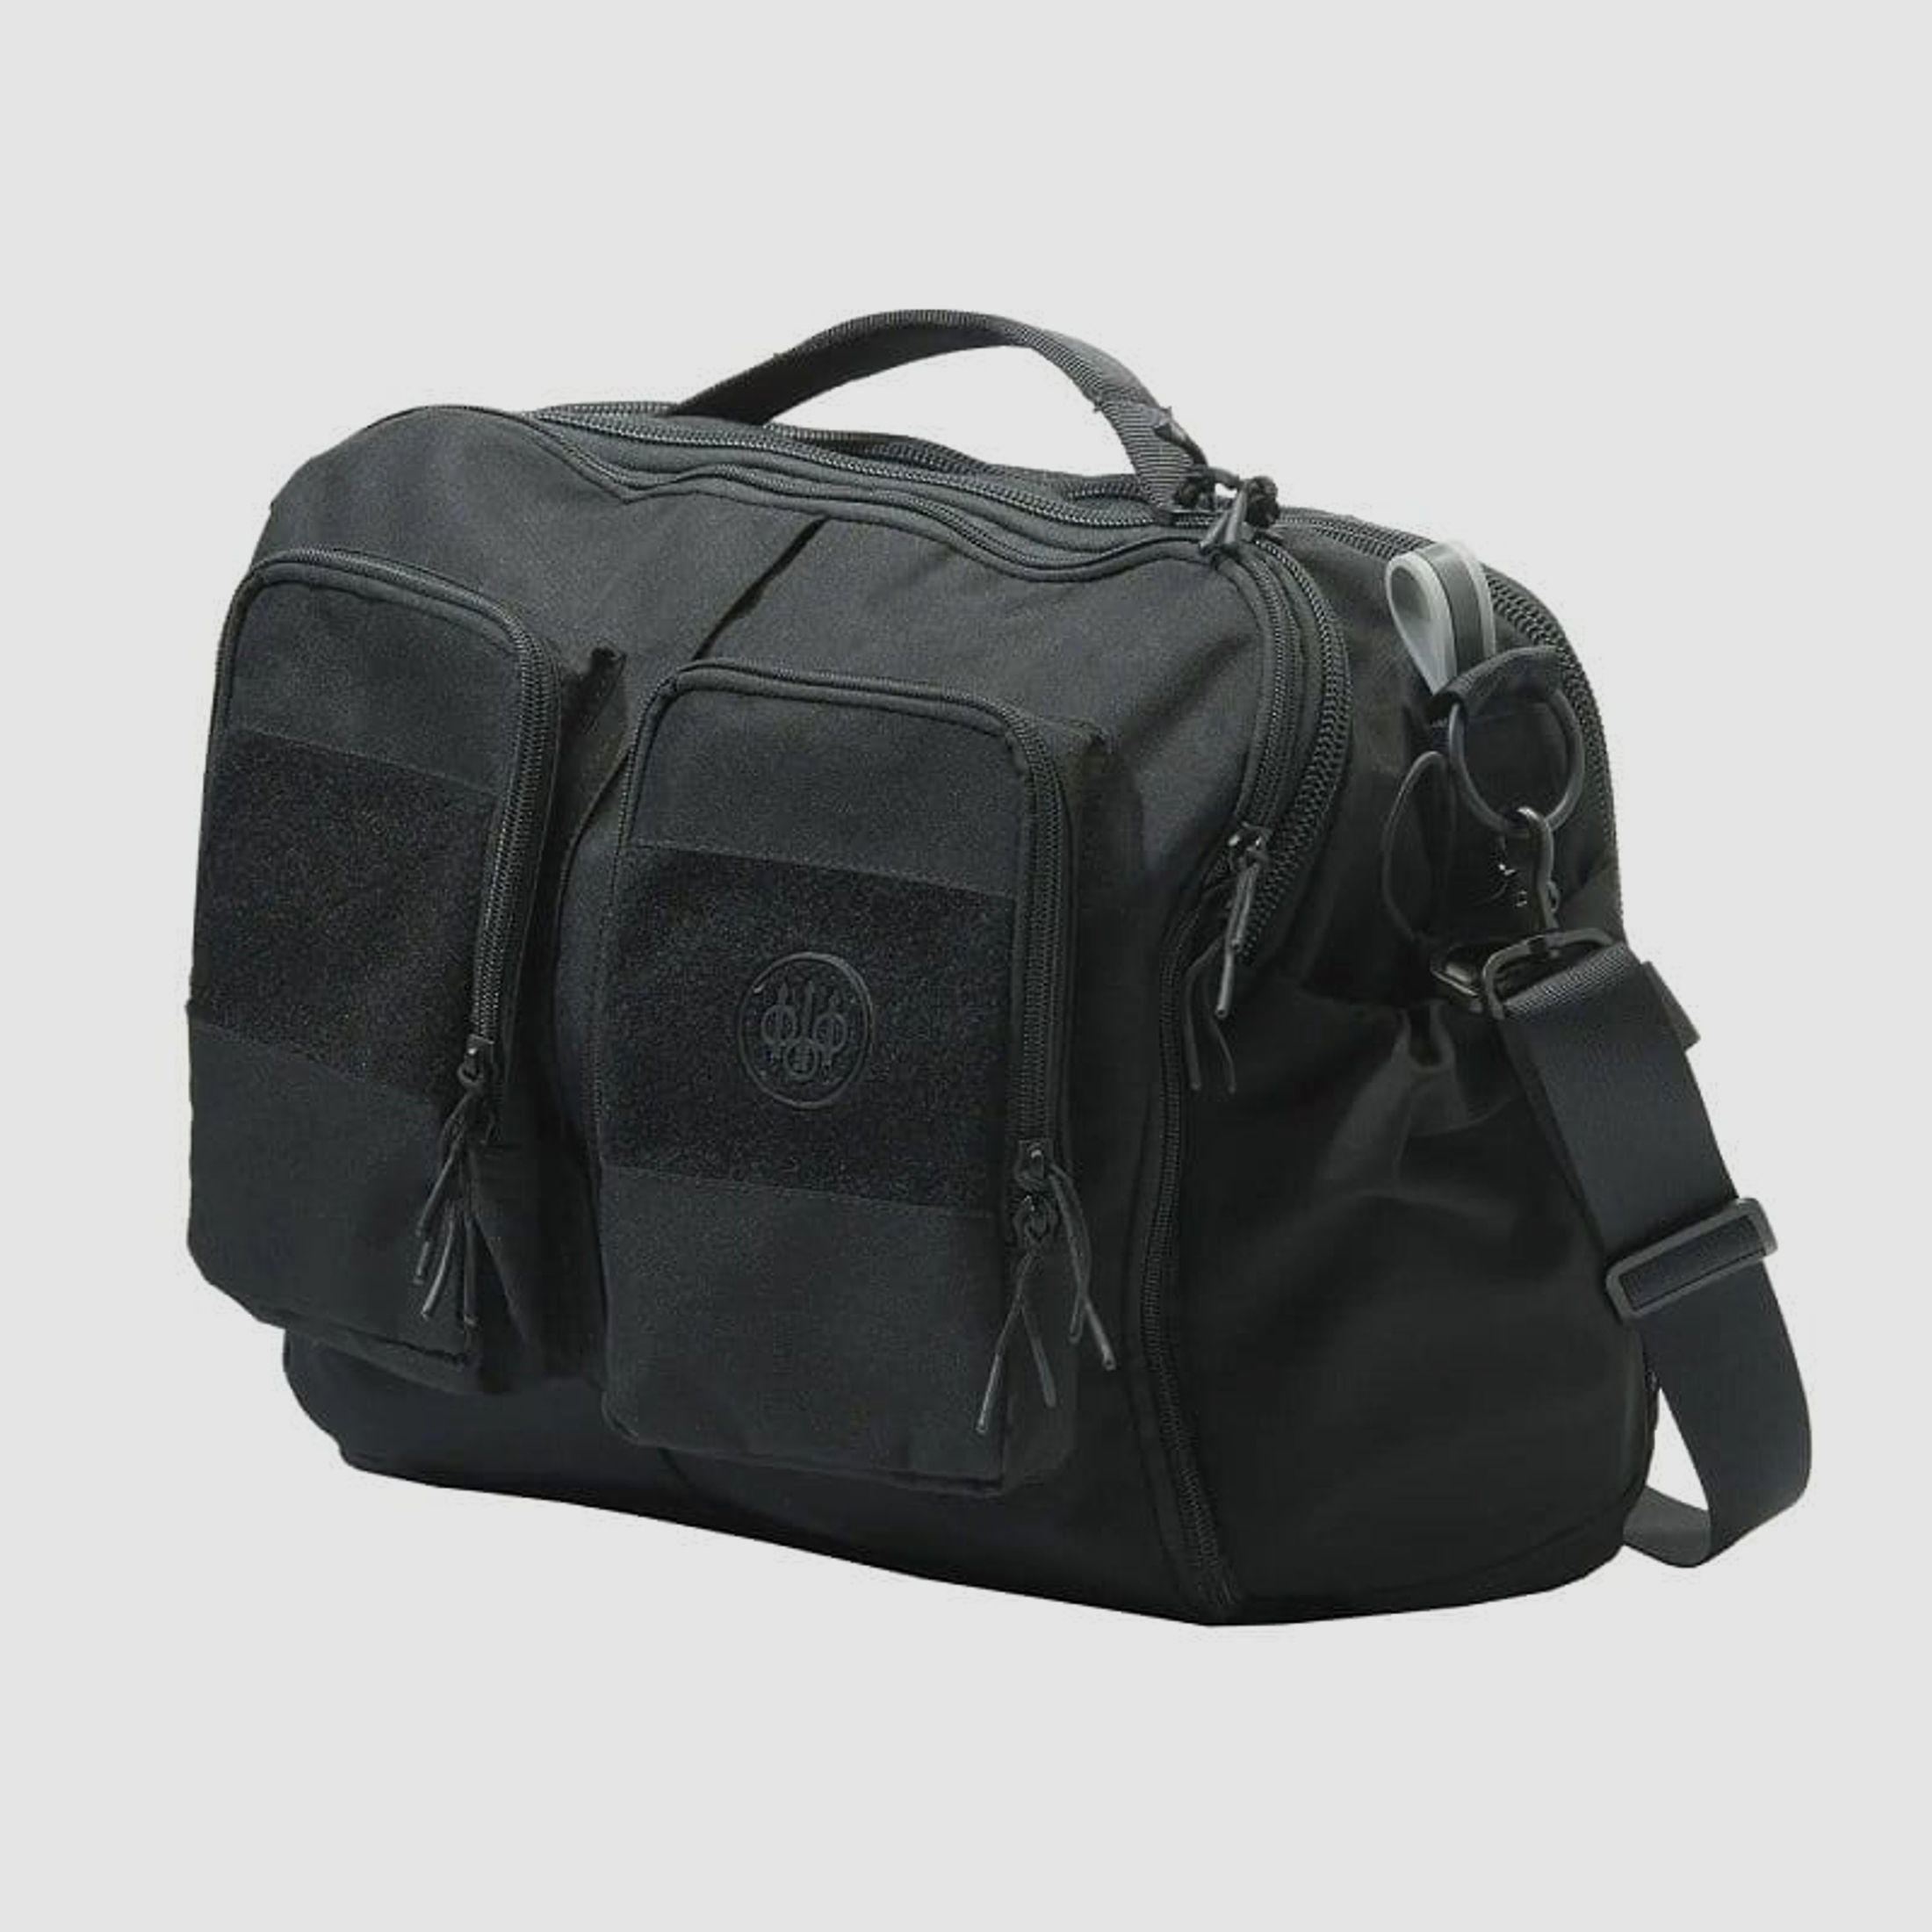 Beretta Tactical Messenger Tasche 24 L